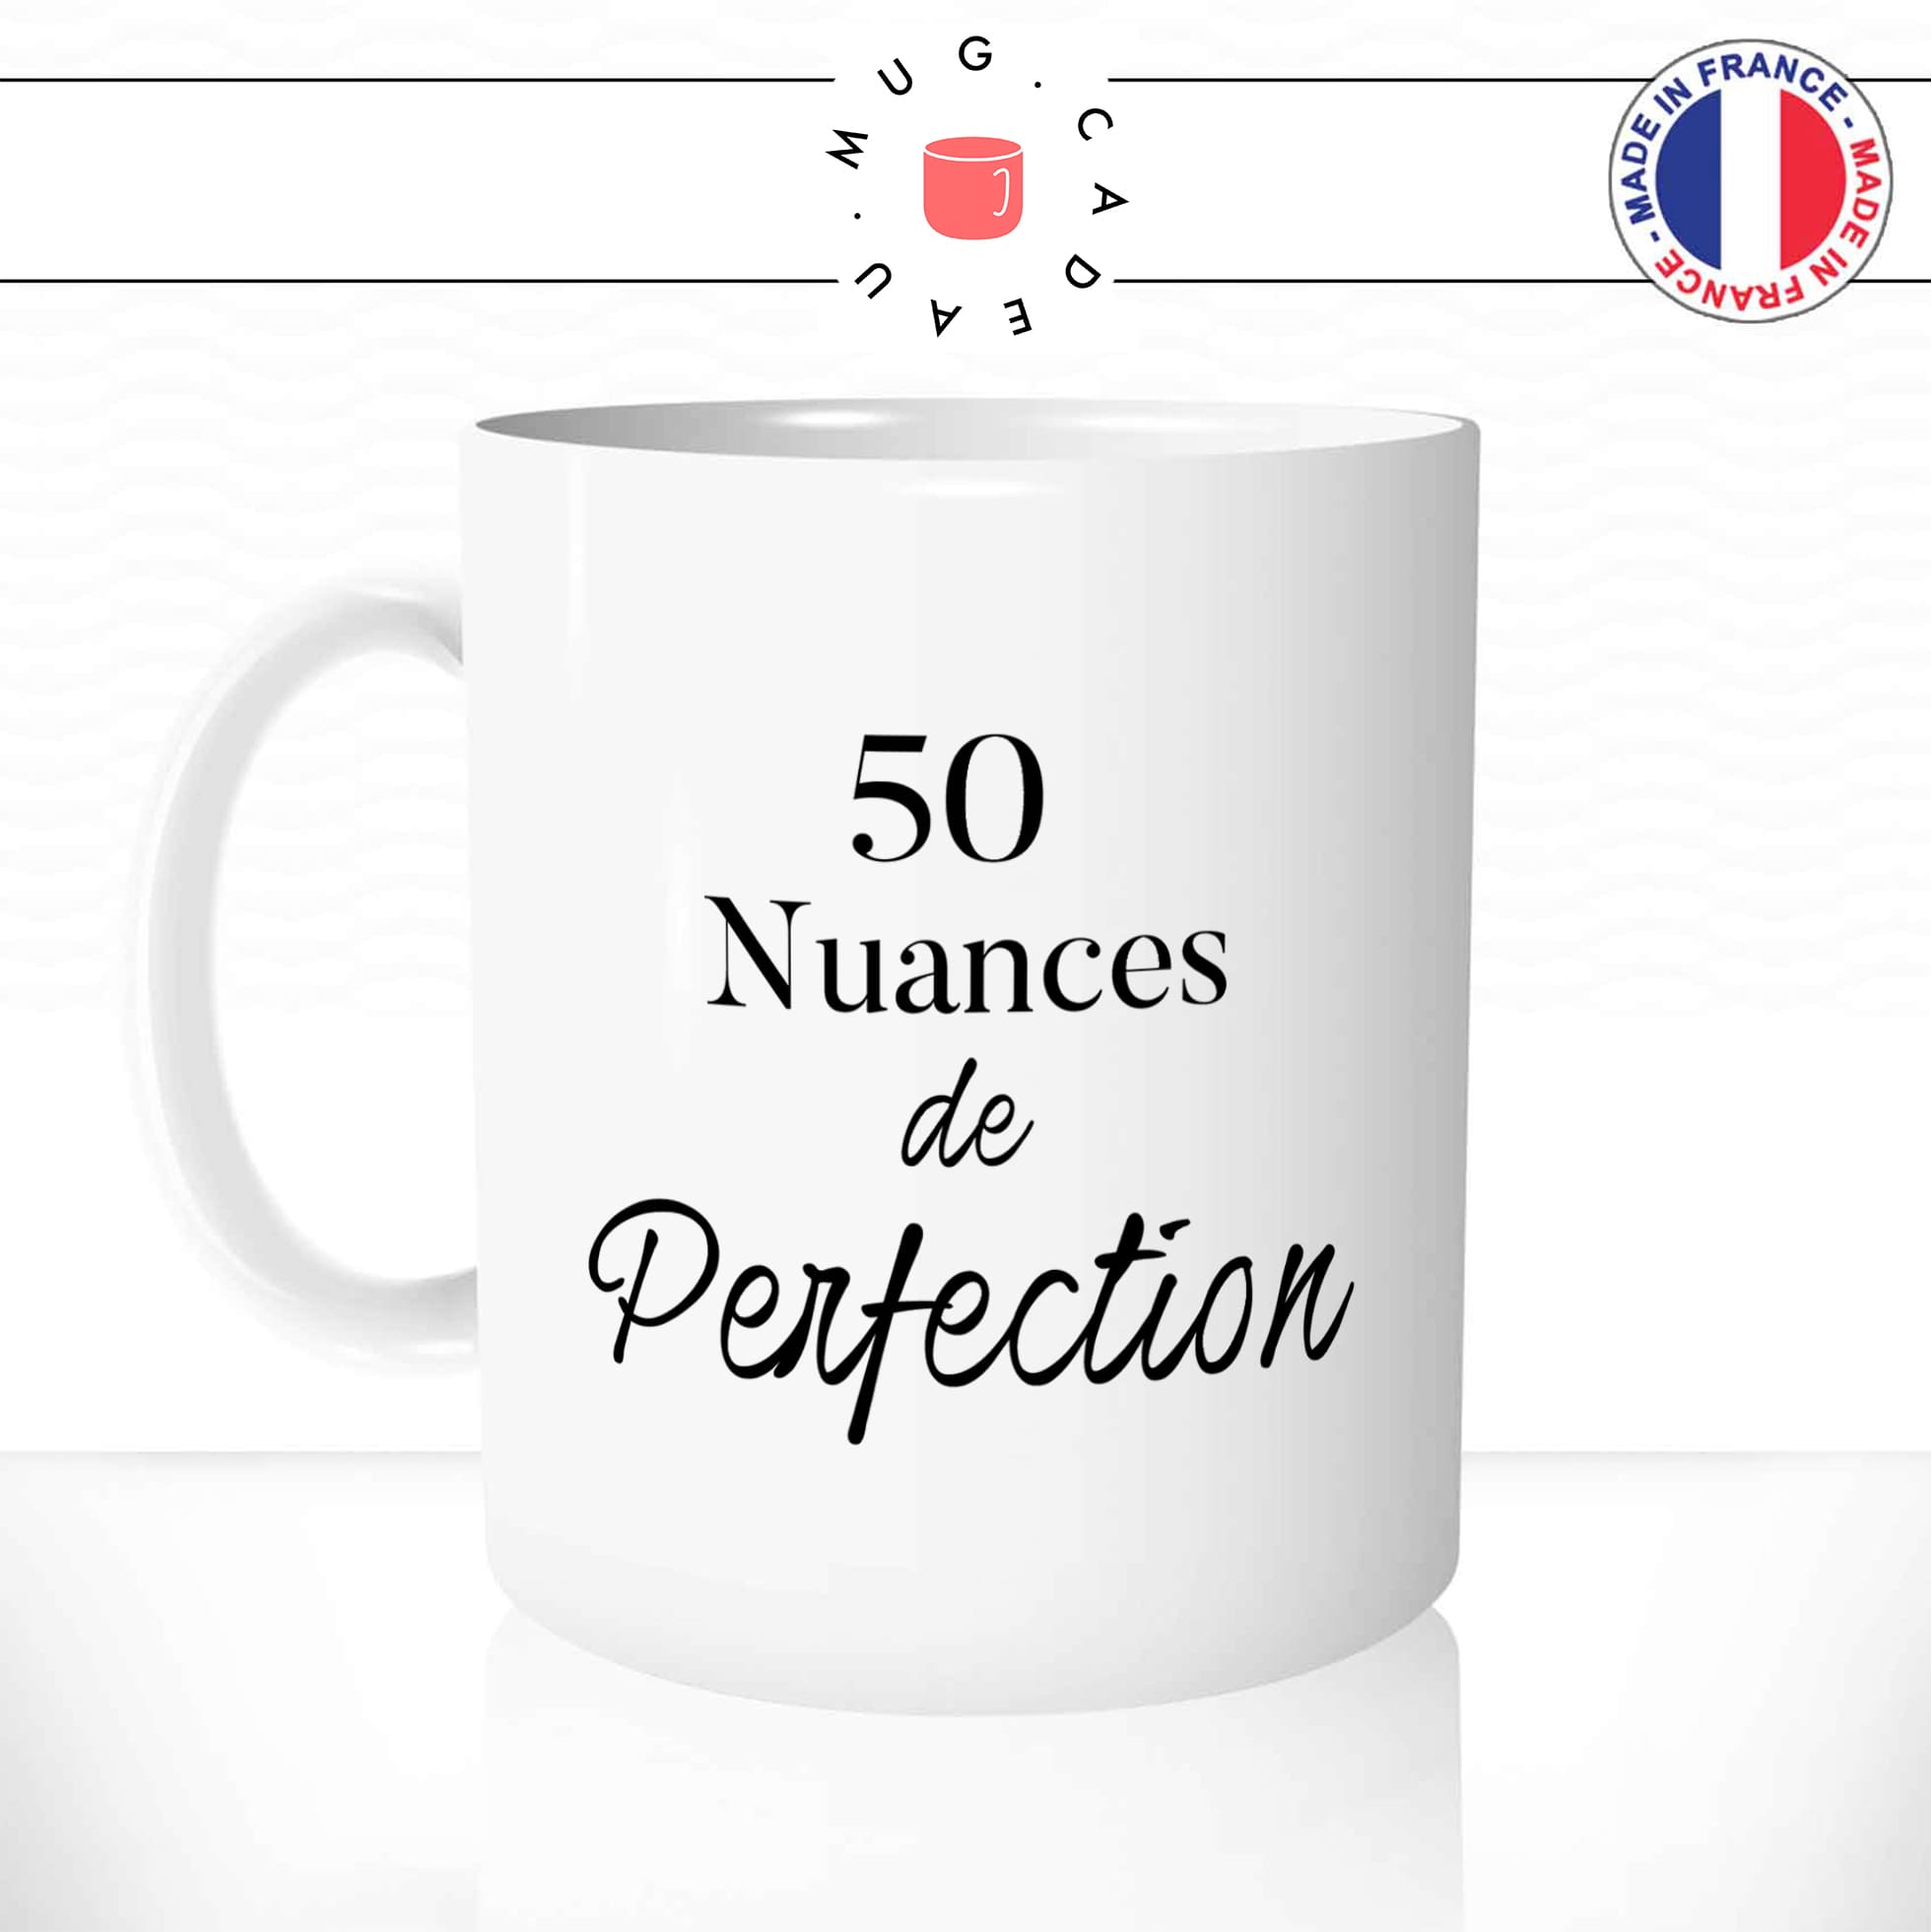 mug-tasse-blanc-unique-50-nuances-de-grey-perfection-homme-femme-parodie-humour-fun-cool-idée-cadeau-original-personnalisé